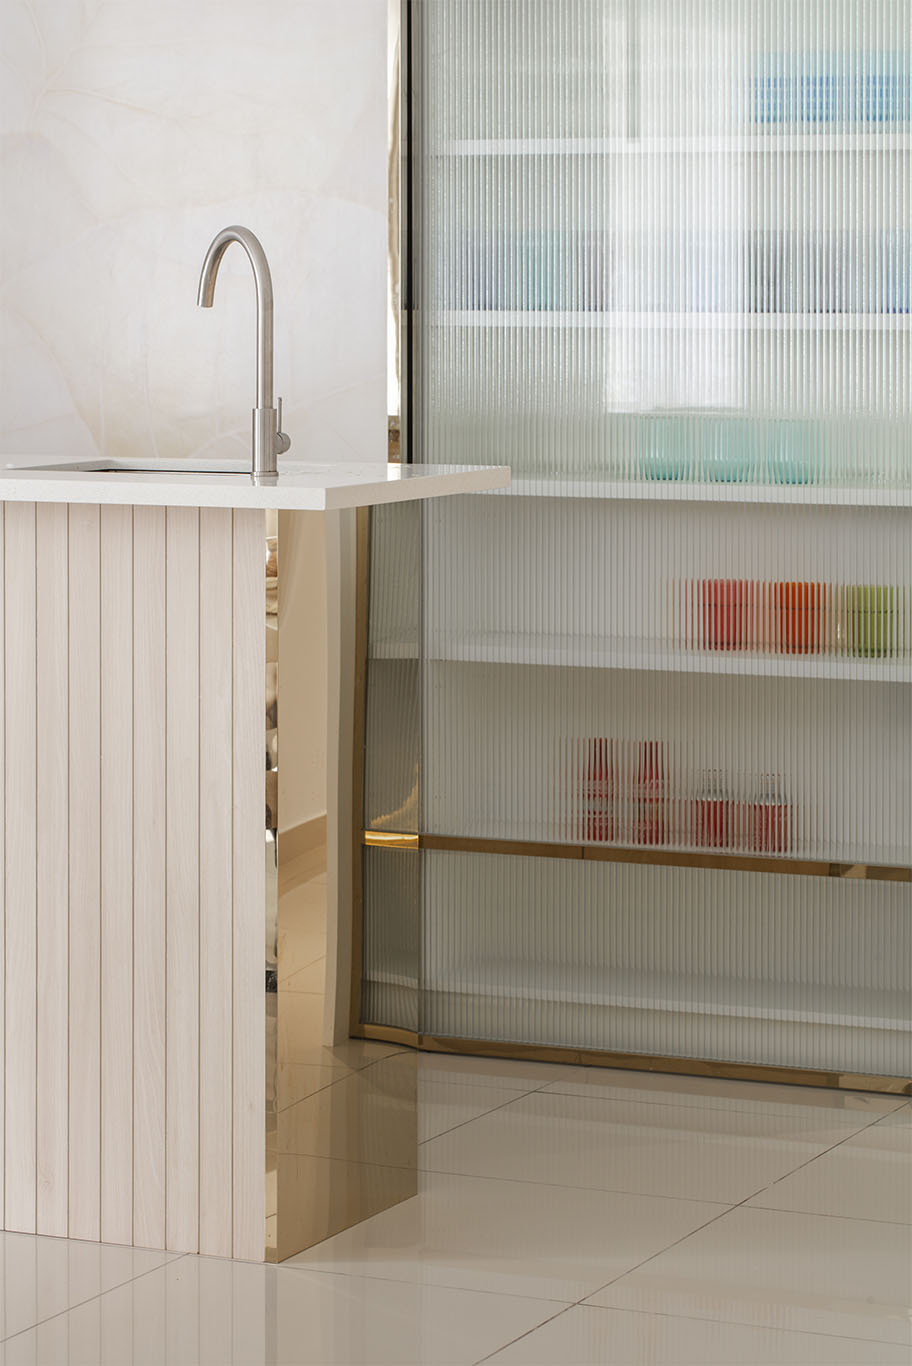 Grande Rhapsody minimalist glass door kitchen cabinet rack Mieux interior design